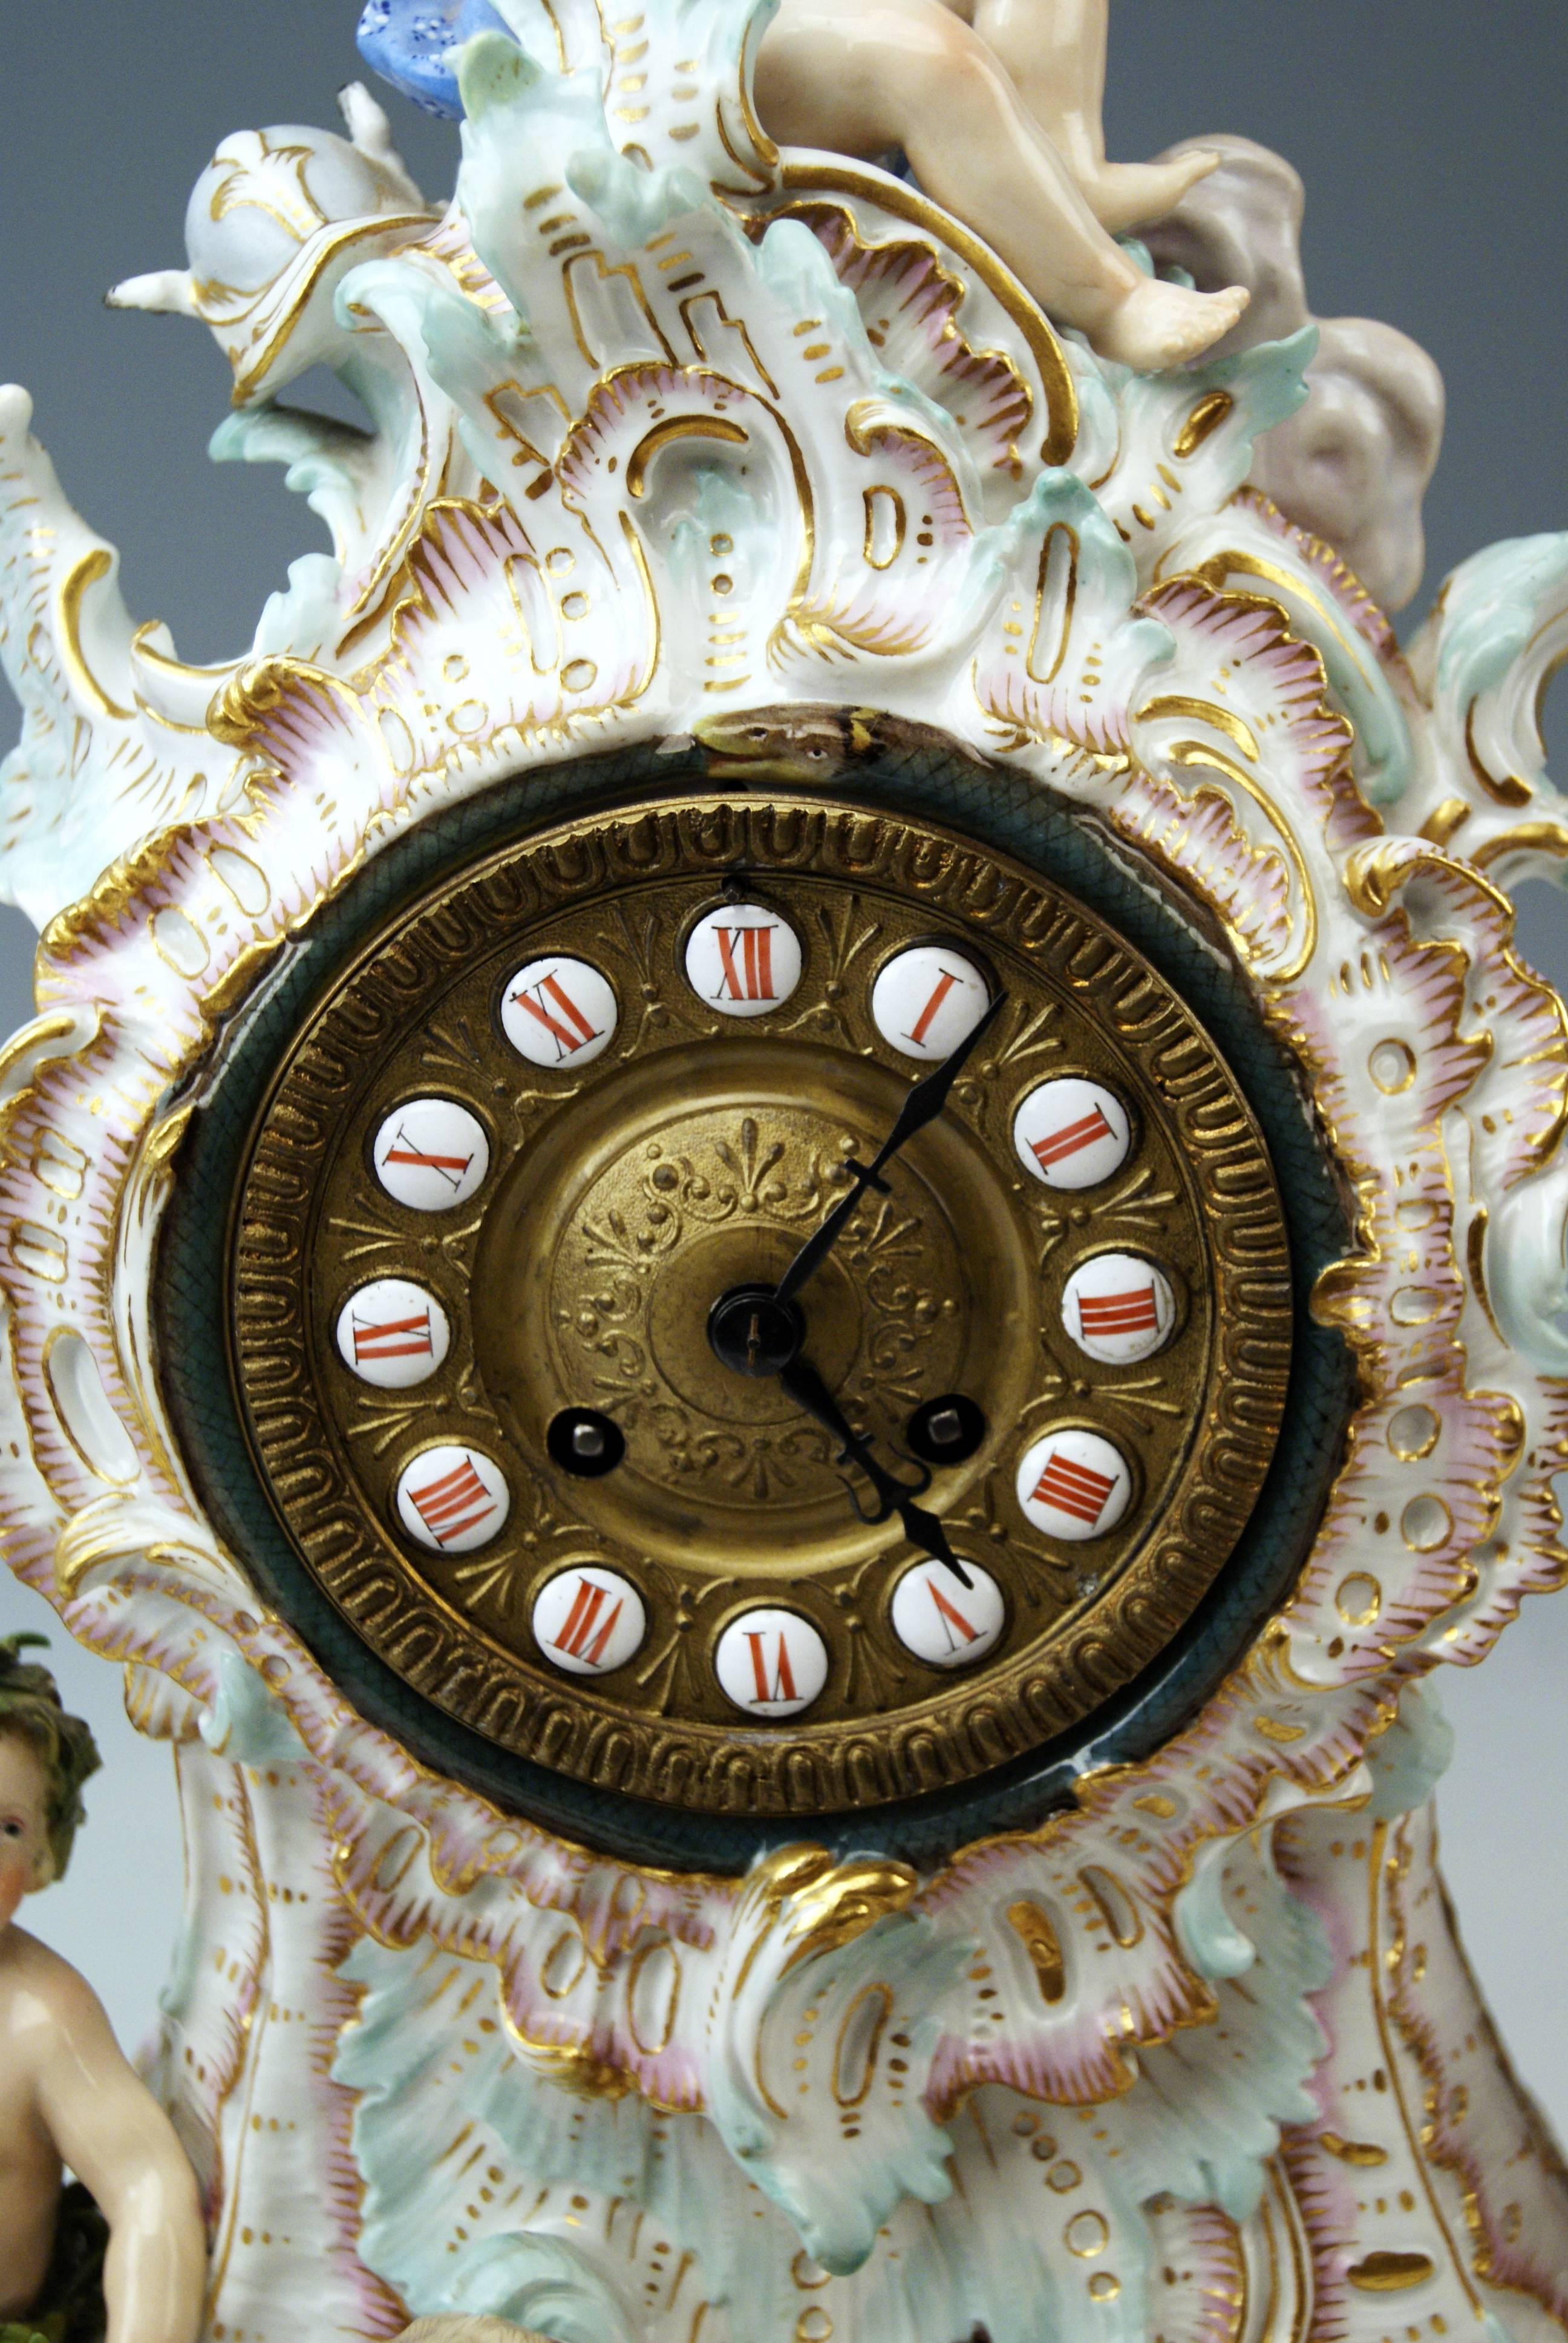 Porcelain Meissen Gorgeous Mantle /Table Clock Four Elements Sculptured Cherubs circa 1860